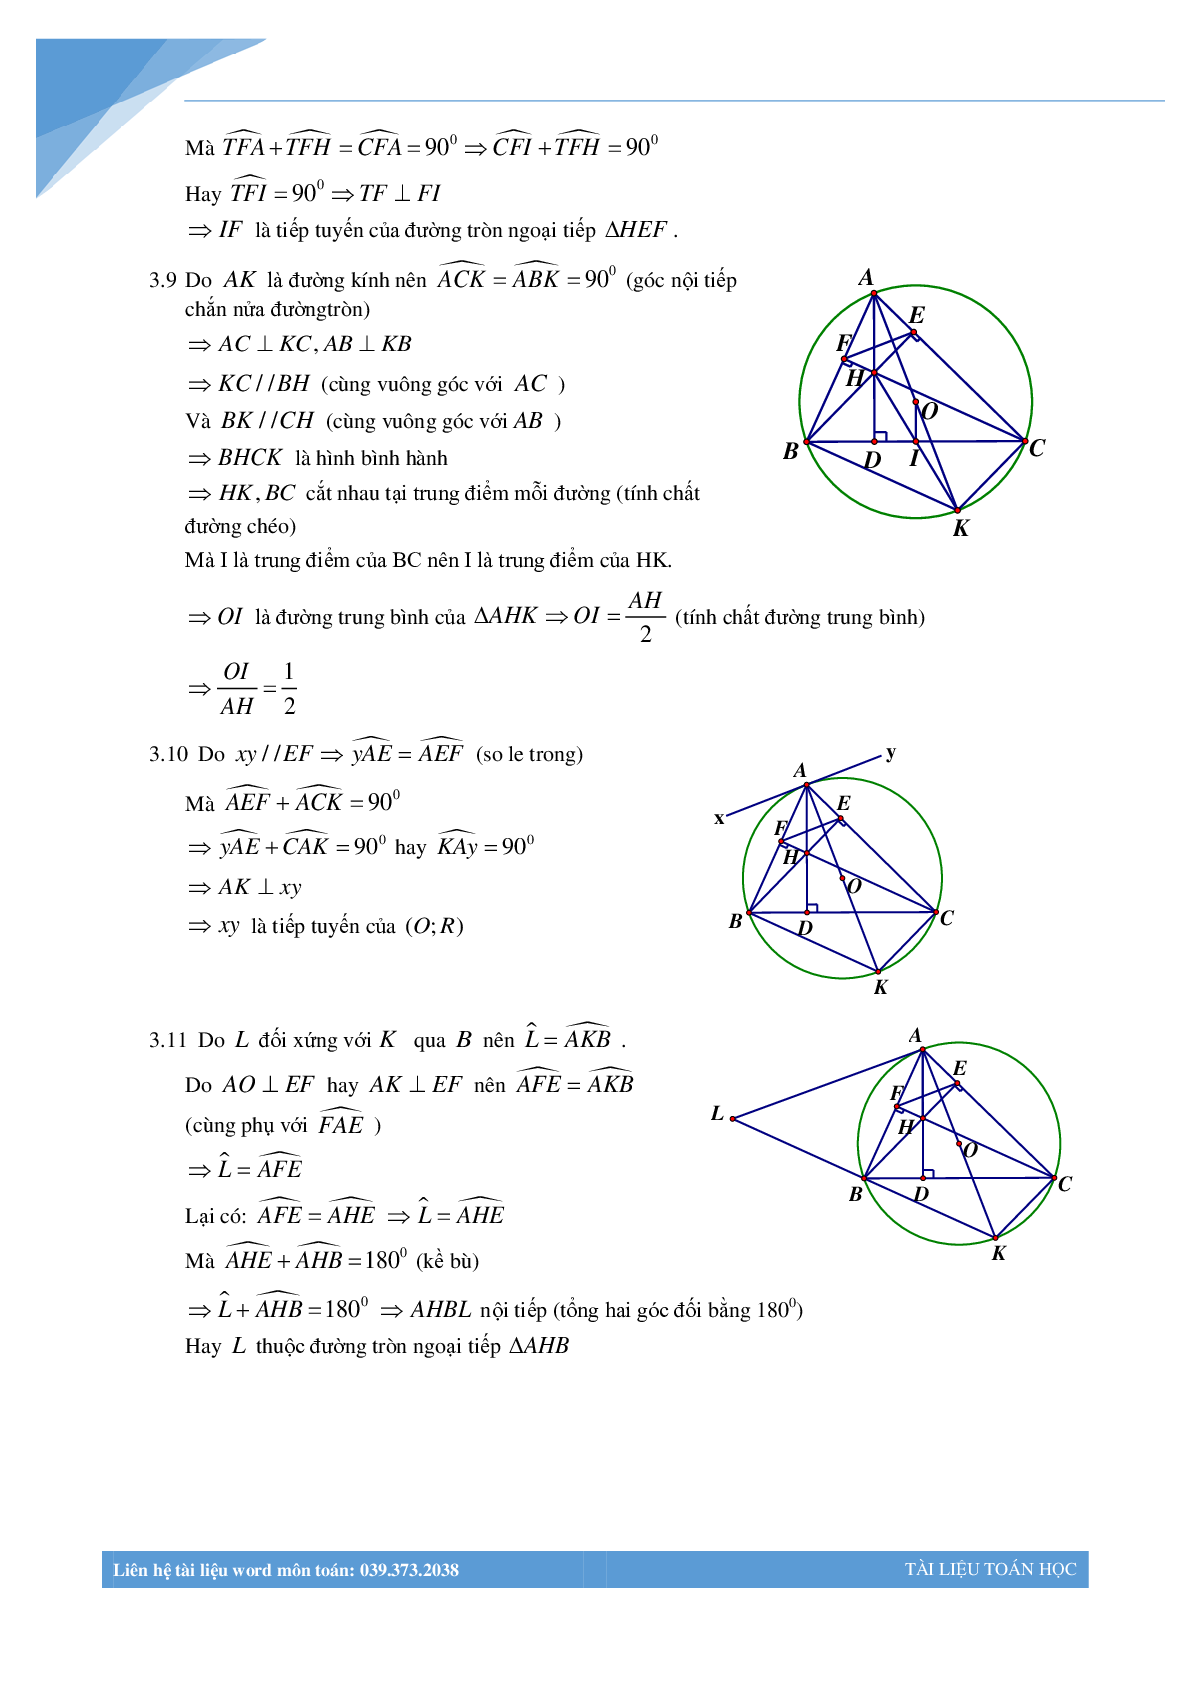 Chùm bài toán hình học luyện thi vào lớp 10 (trang 5)